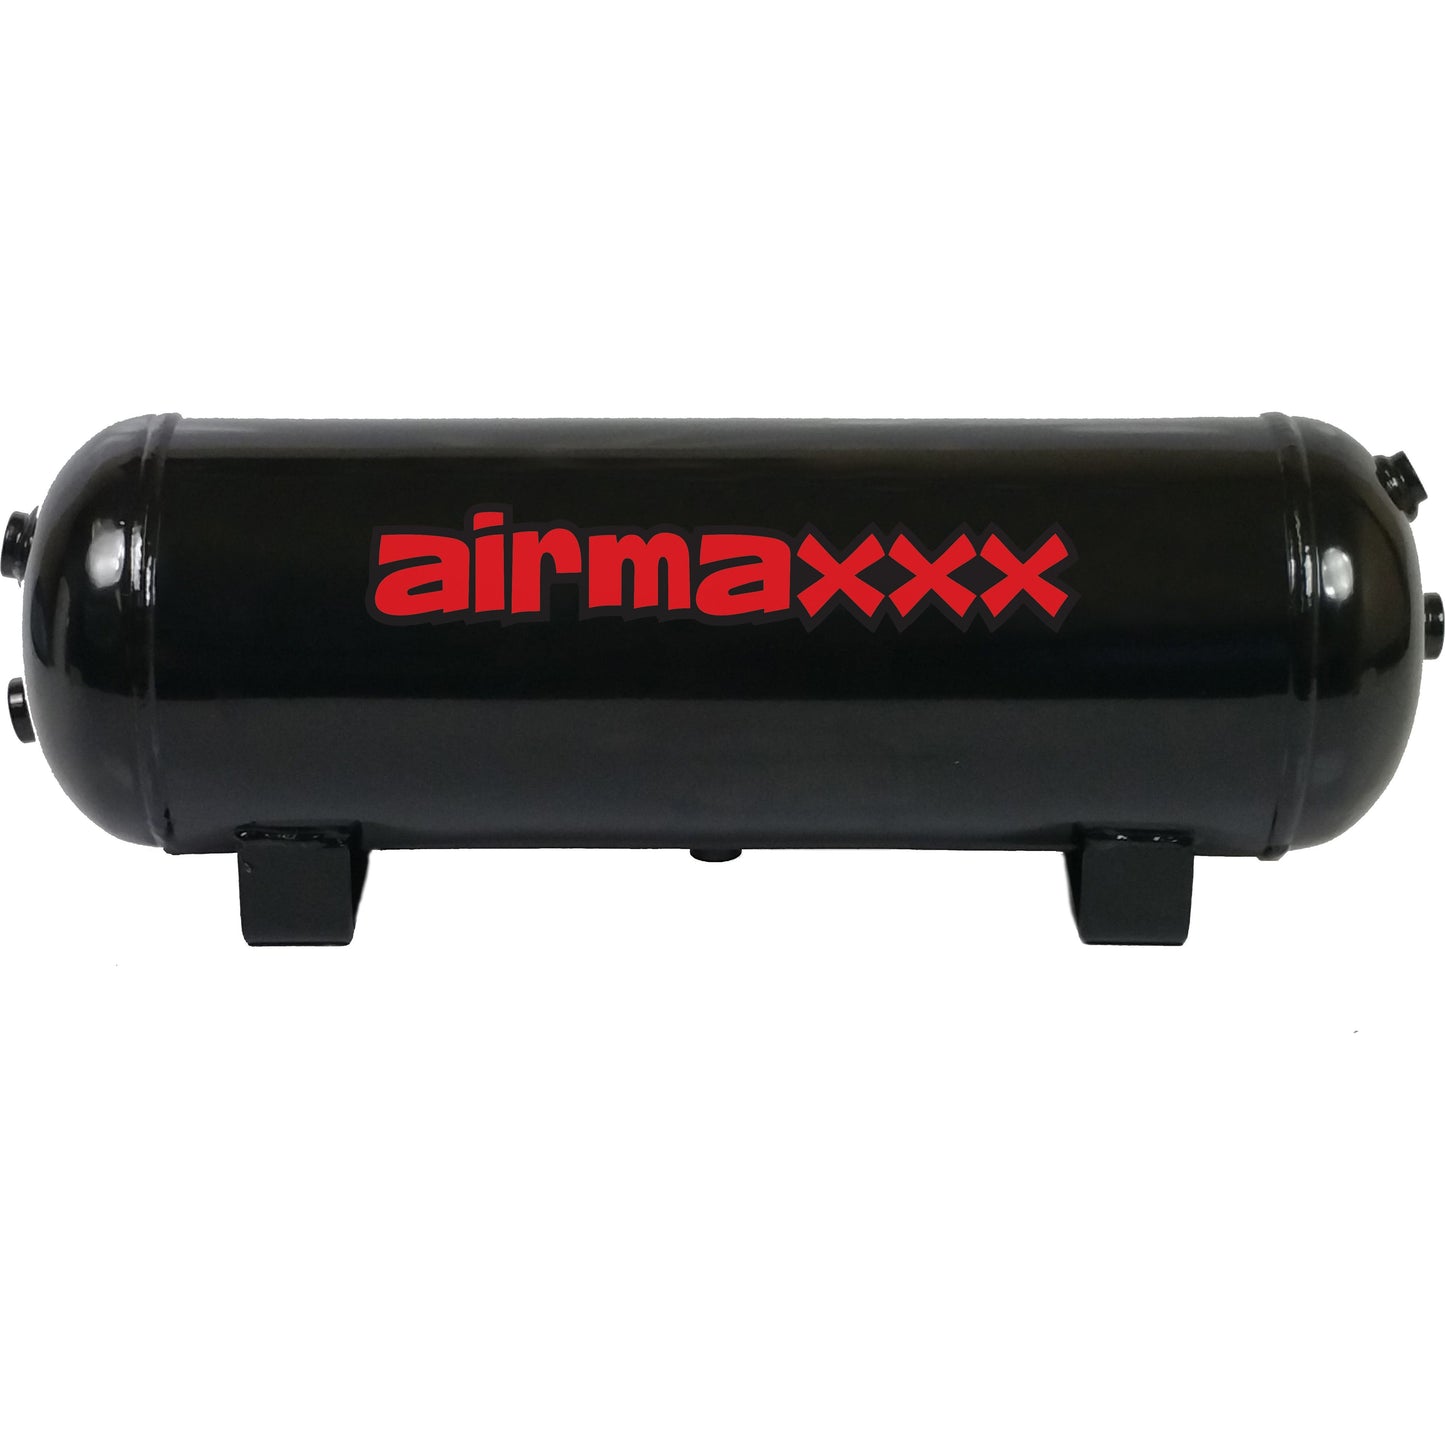 Air Compressor Chrome 480 airmaxxx & 3 Gallon Steel Air Tank